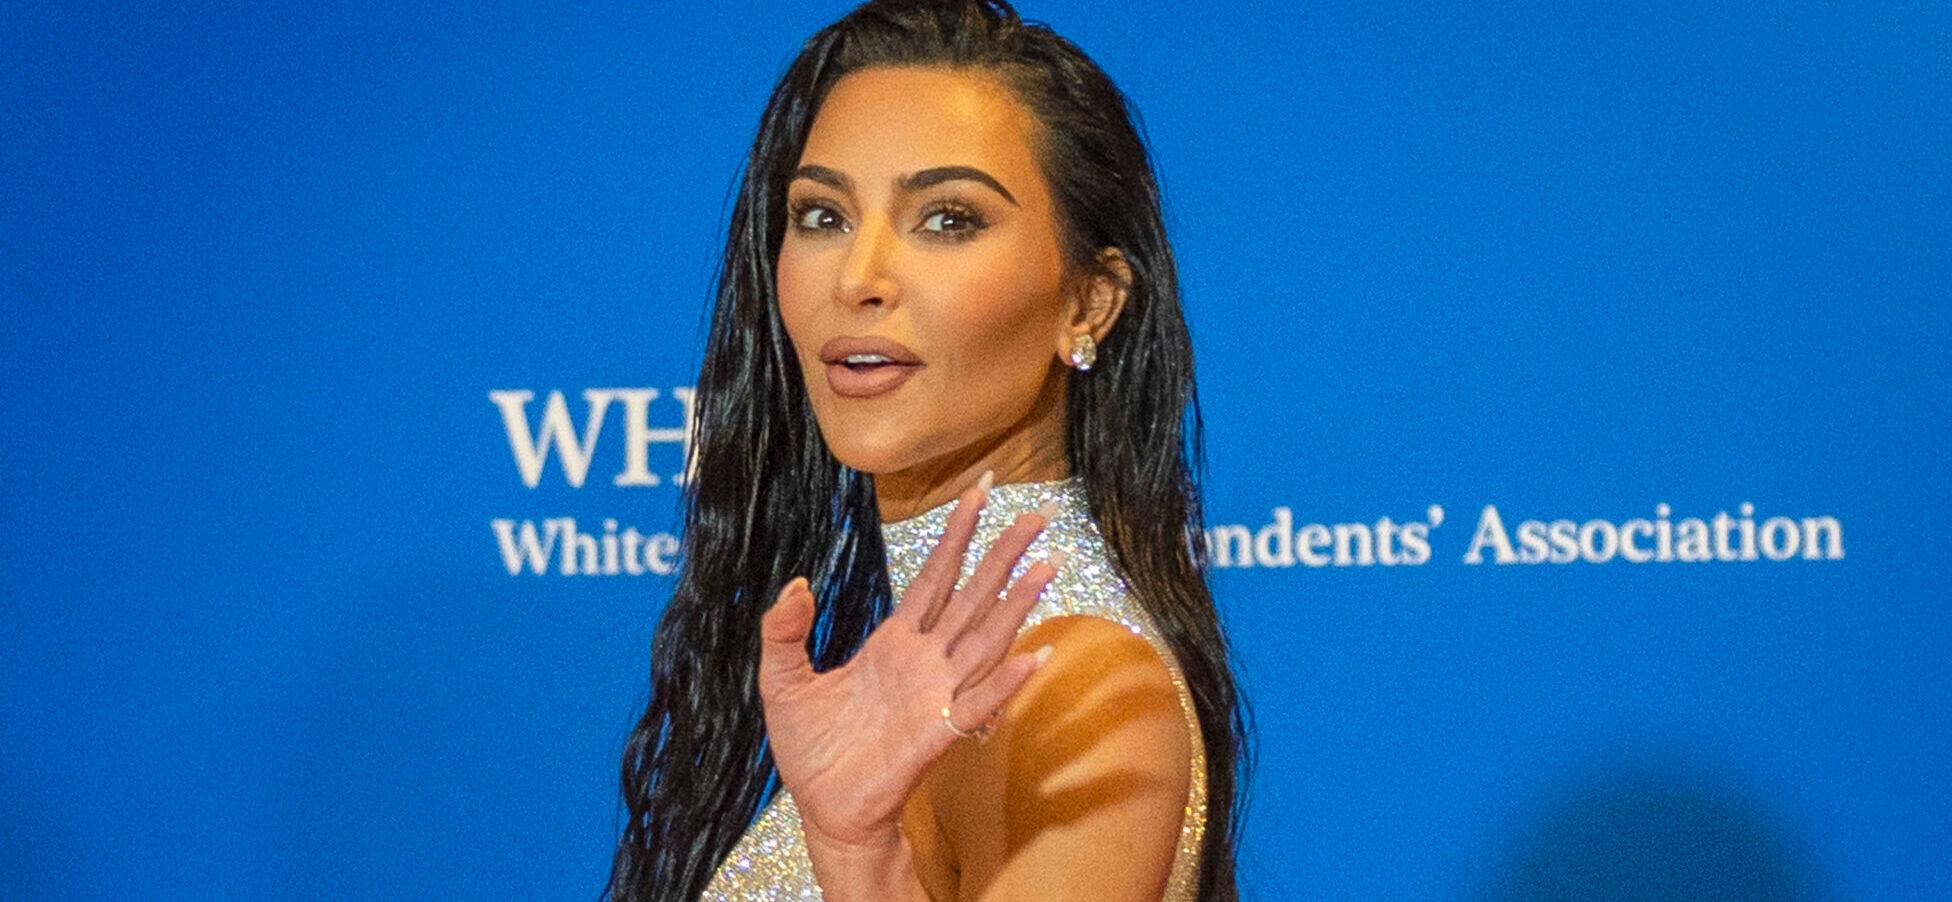 Kim Kardashian Files Emergency Restraining Order Against Alleged Stalker